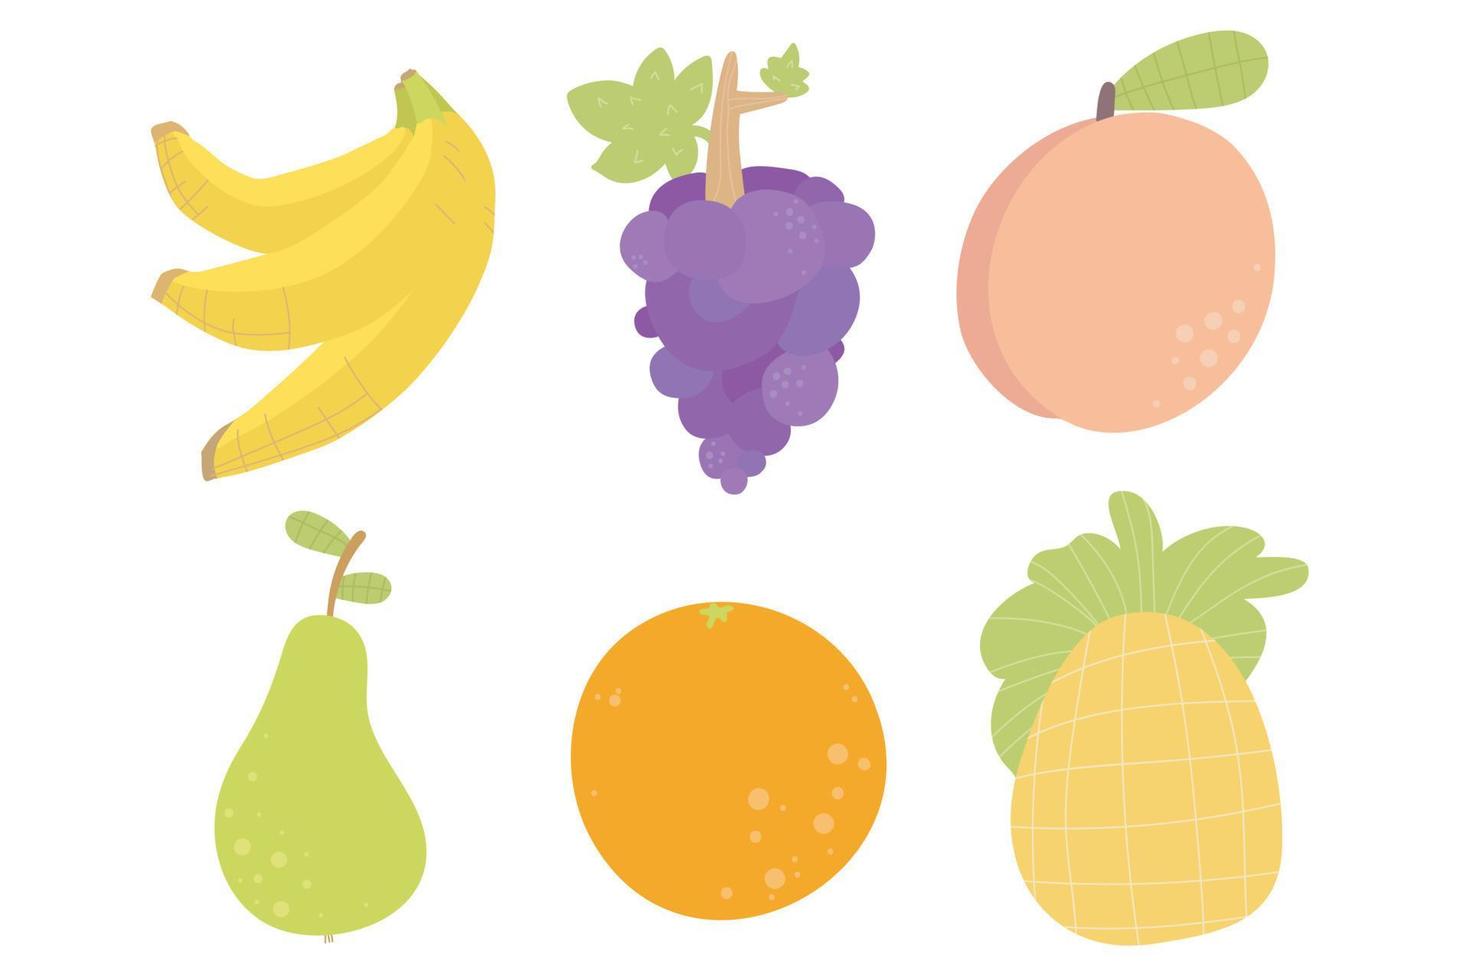 ananas, banane, ananas, orange, pêche, poire. collection de fruits drôles de dessin animé vecteur